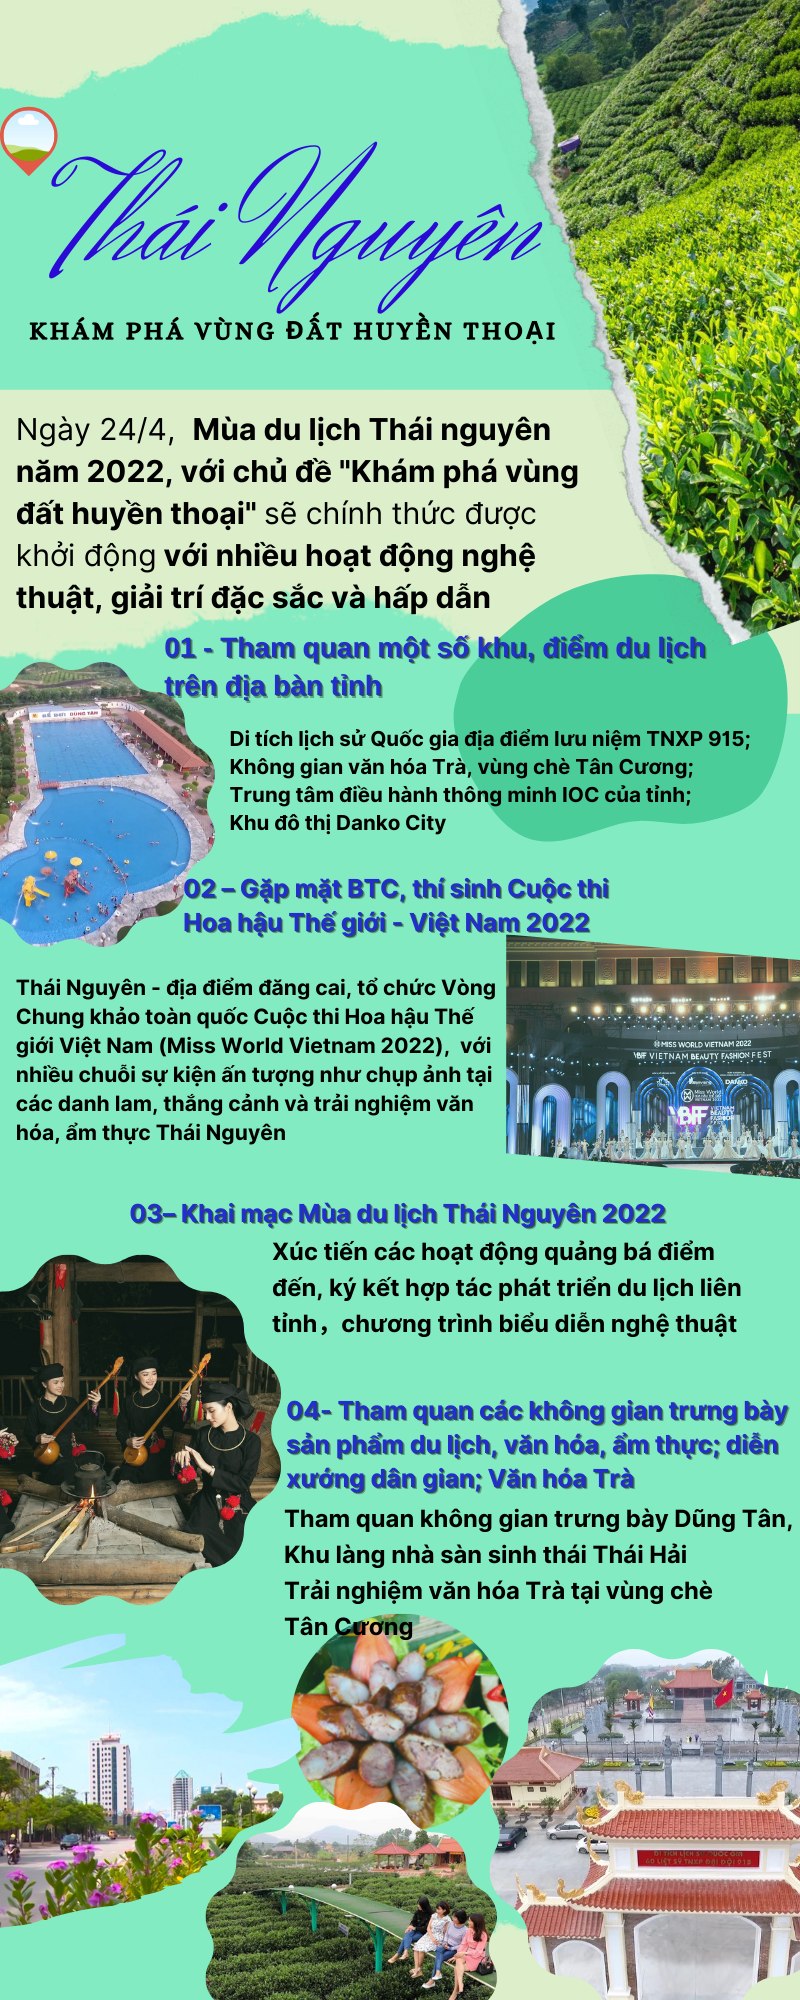 [Infographic]  Thái Nguyên - Khám phá vùng đất huyền thoại